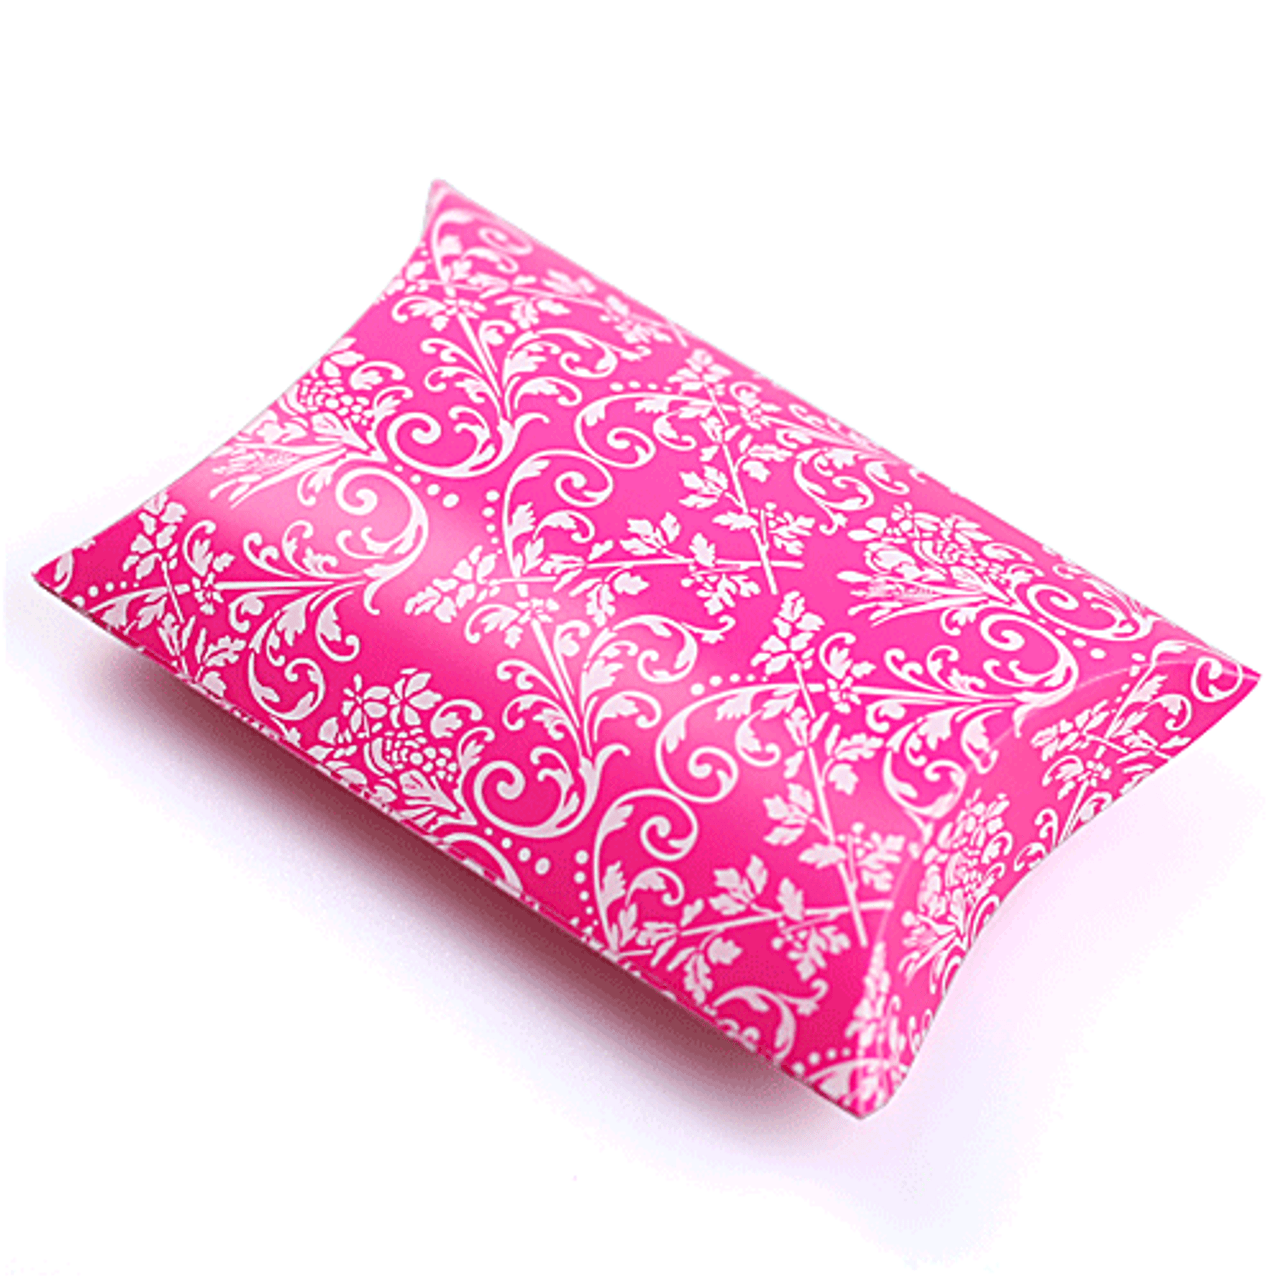 Hot Pink w/White Damask Print Pillow Box